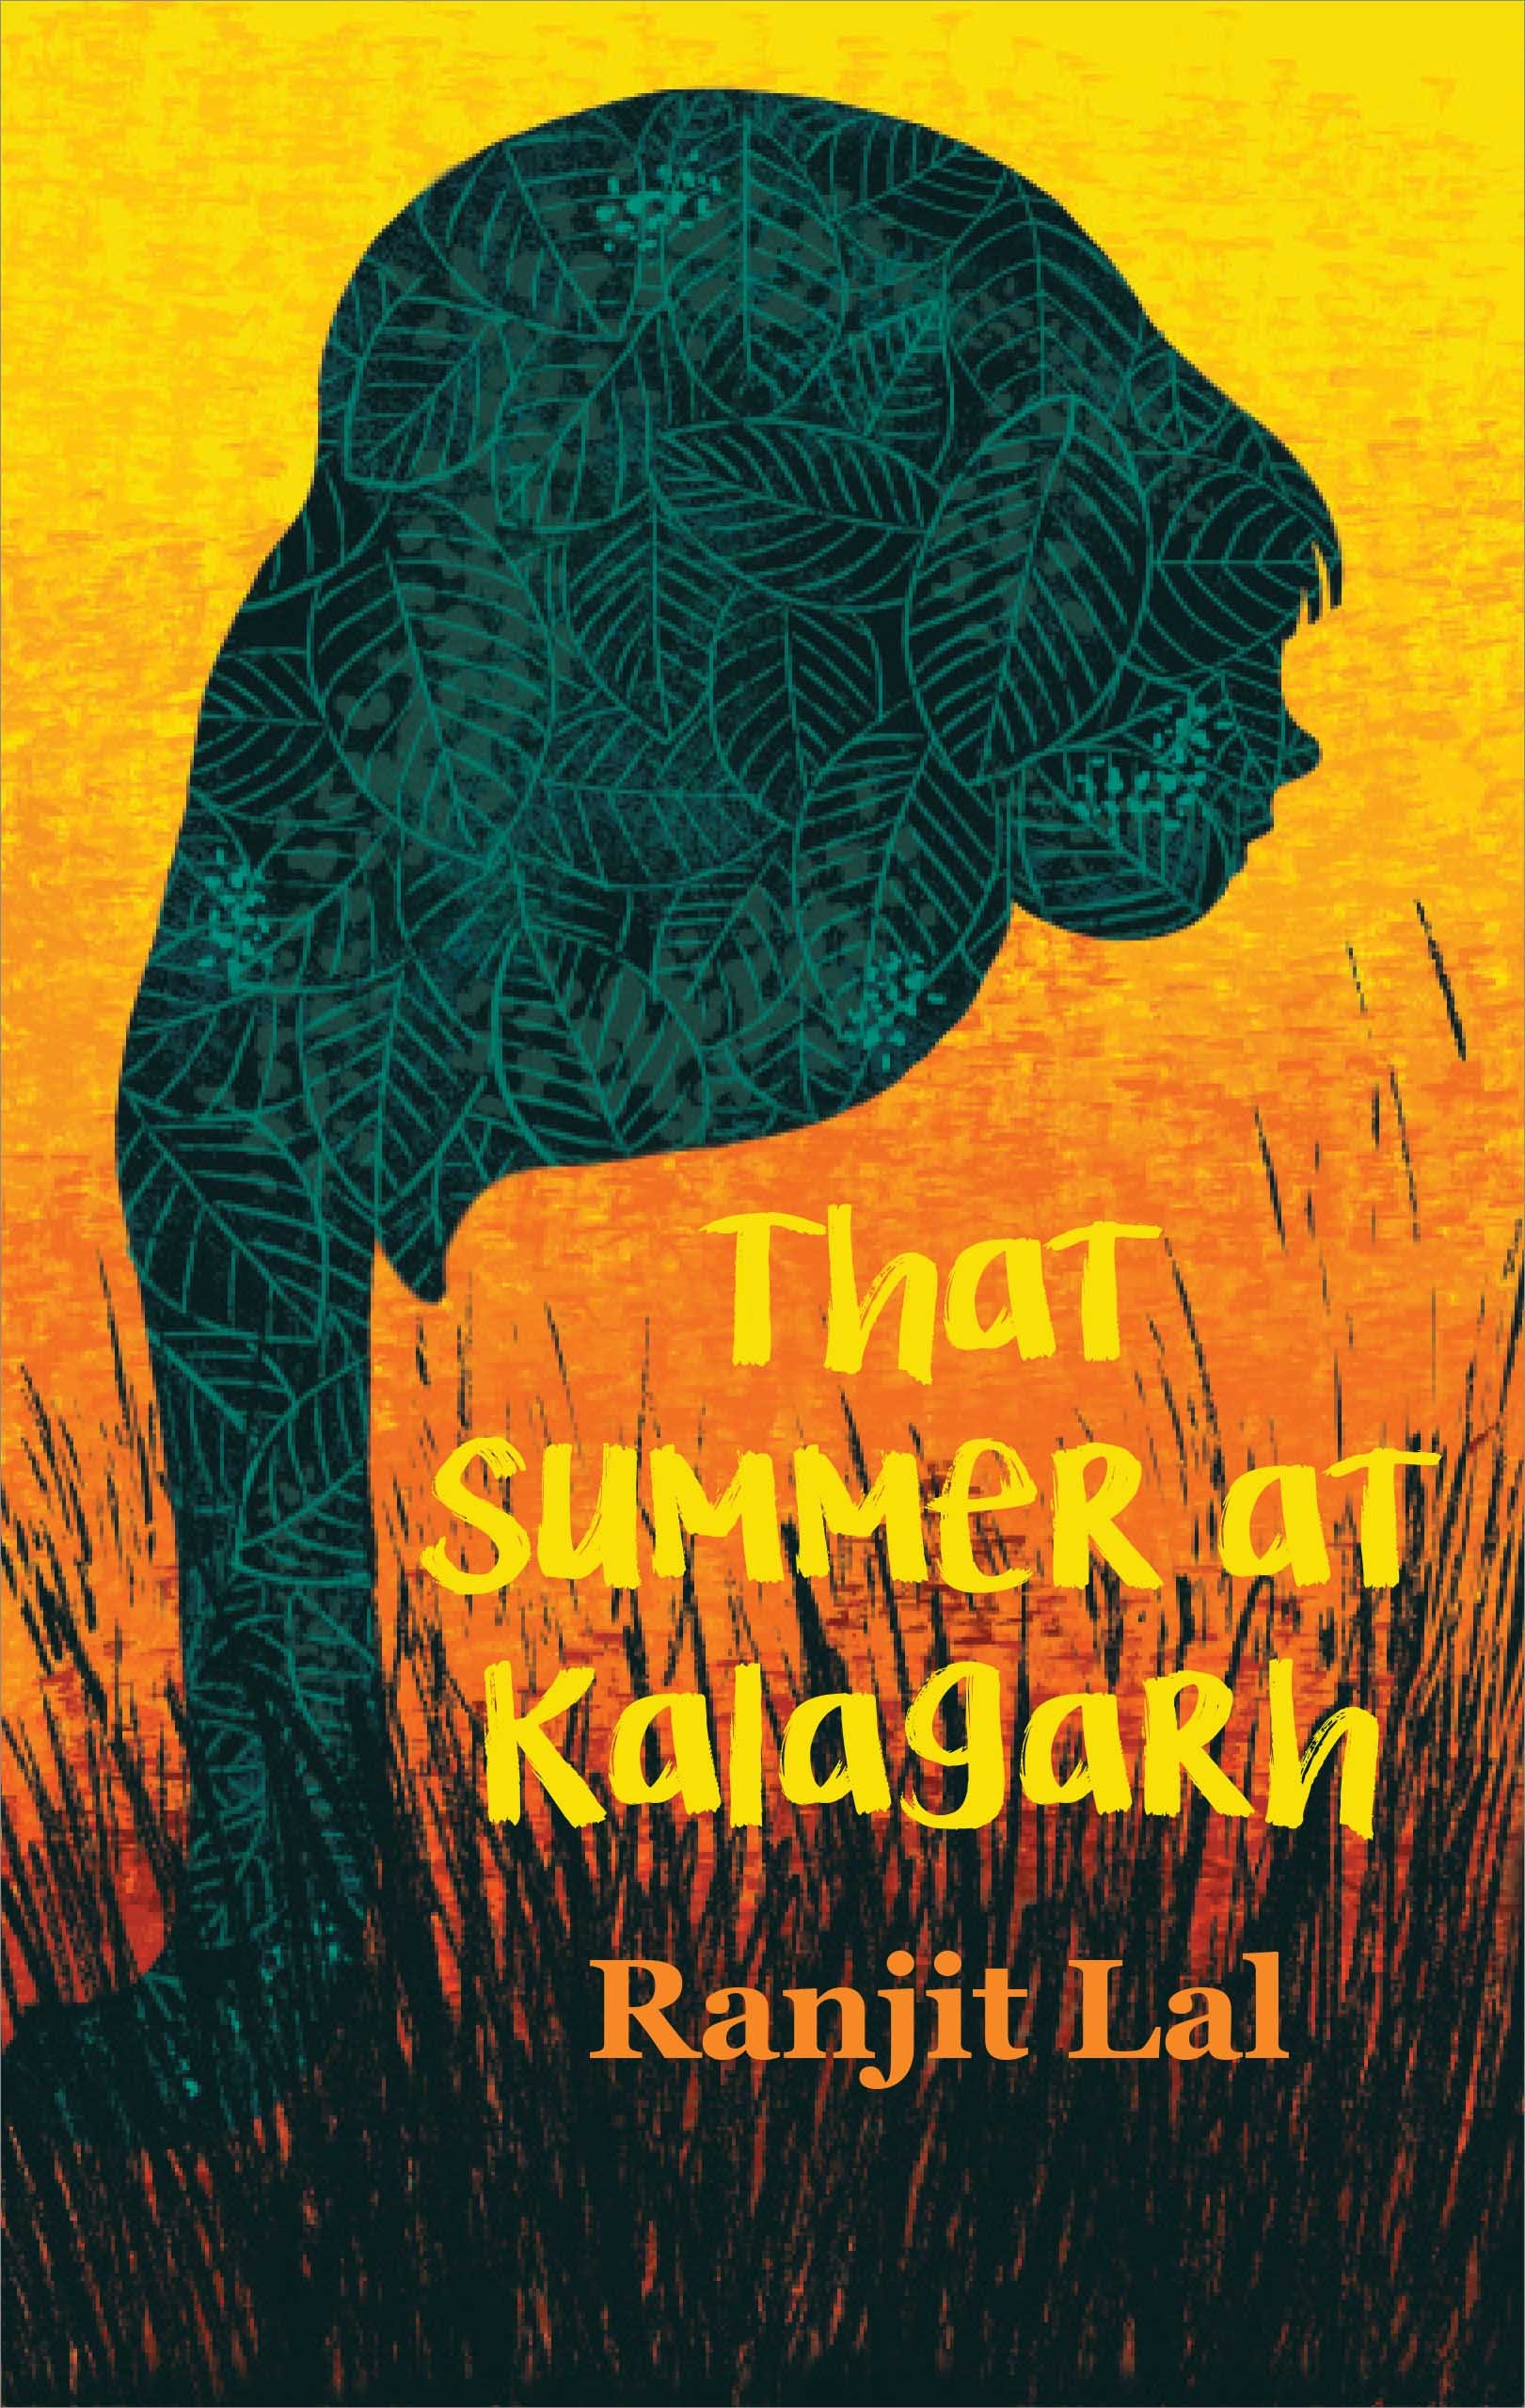 That Summer At Kalagarh (English)